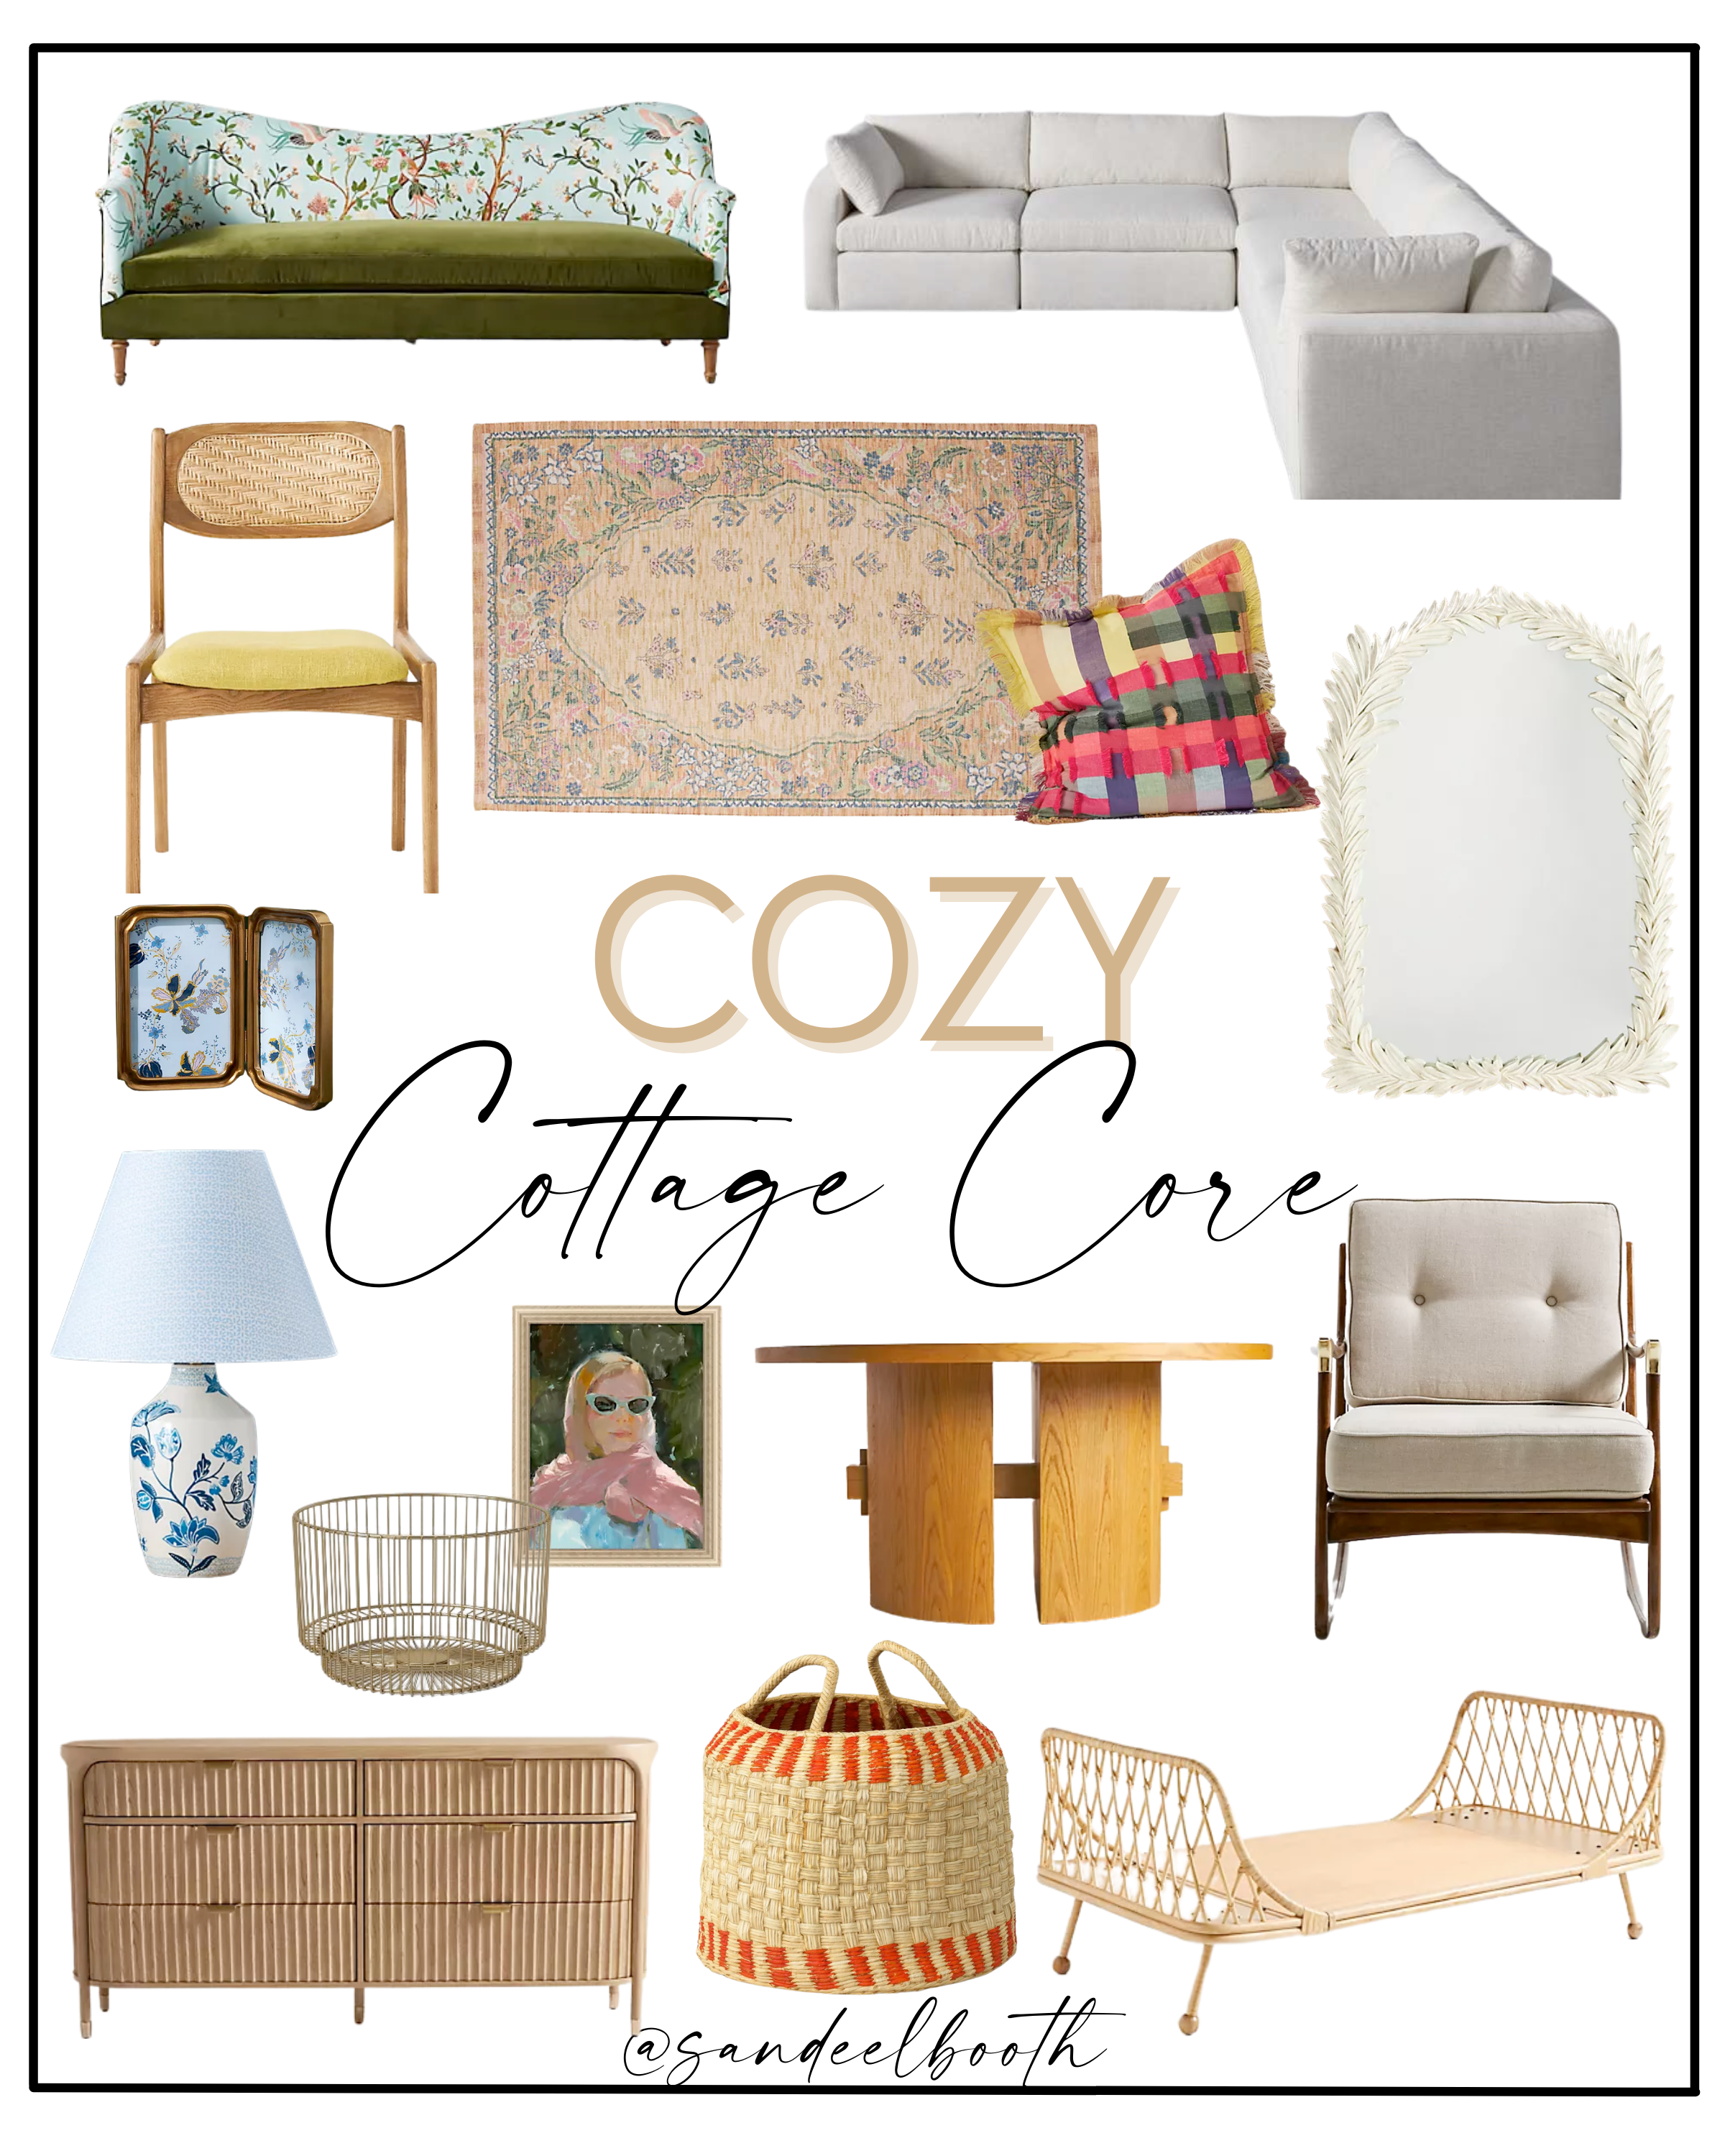 Cozy Cottage Core